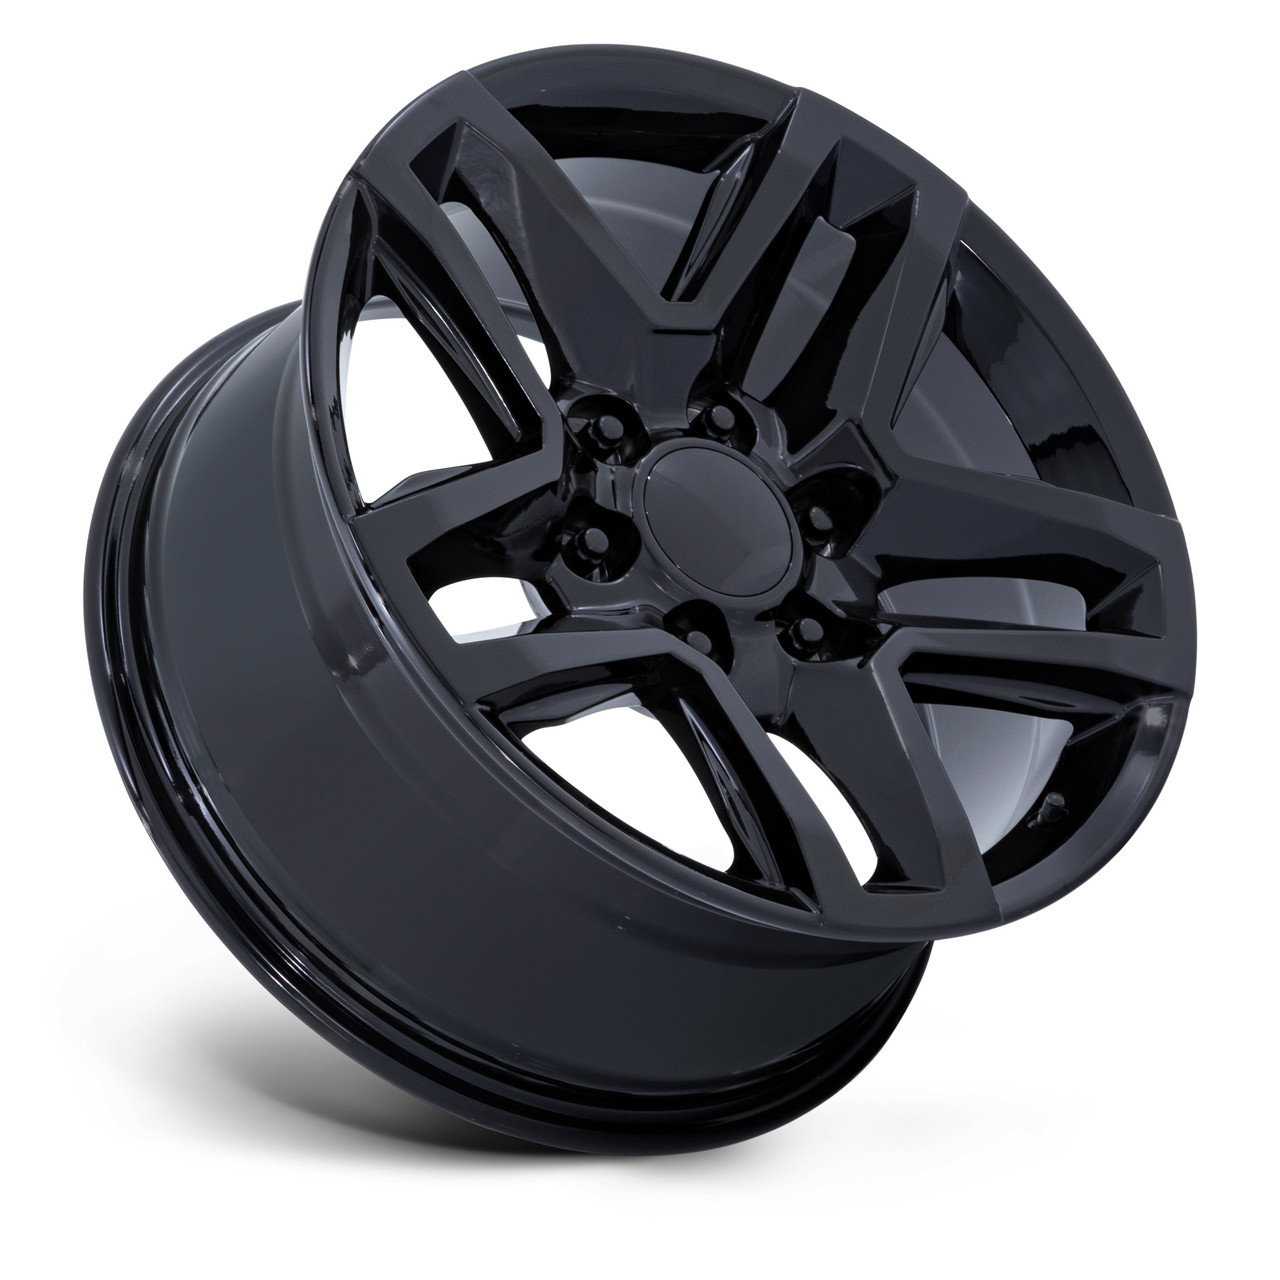 Set 4 20" Performance Replicas PR220 Gloss Black 20x9 Wheels 6x5.5 28mm Rims